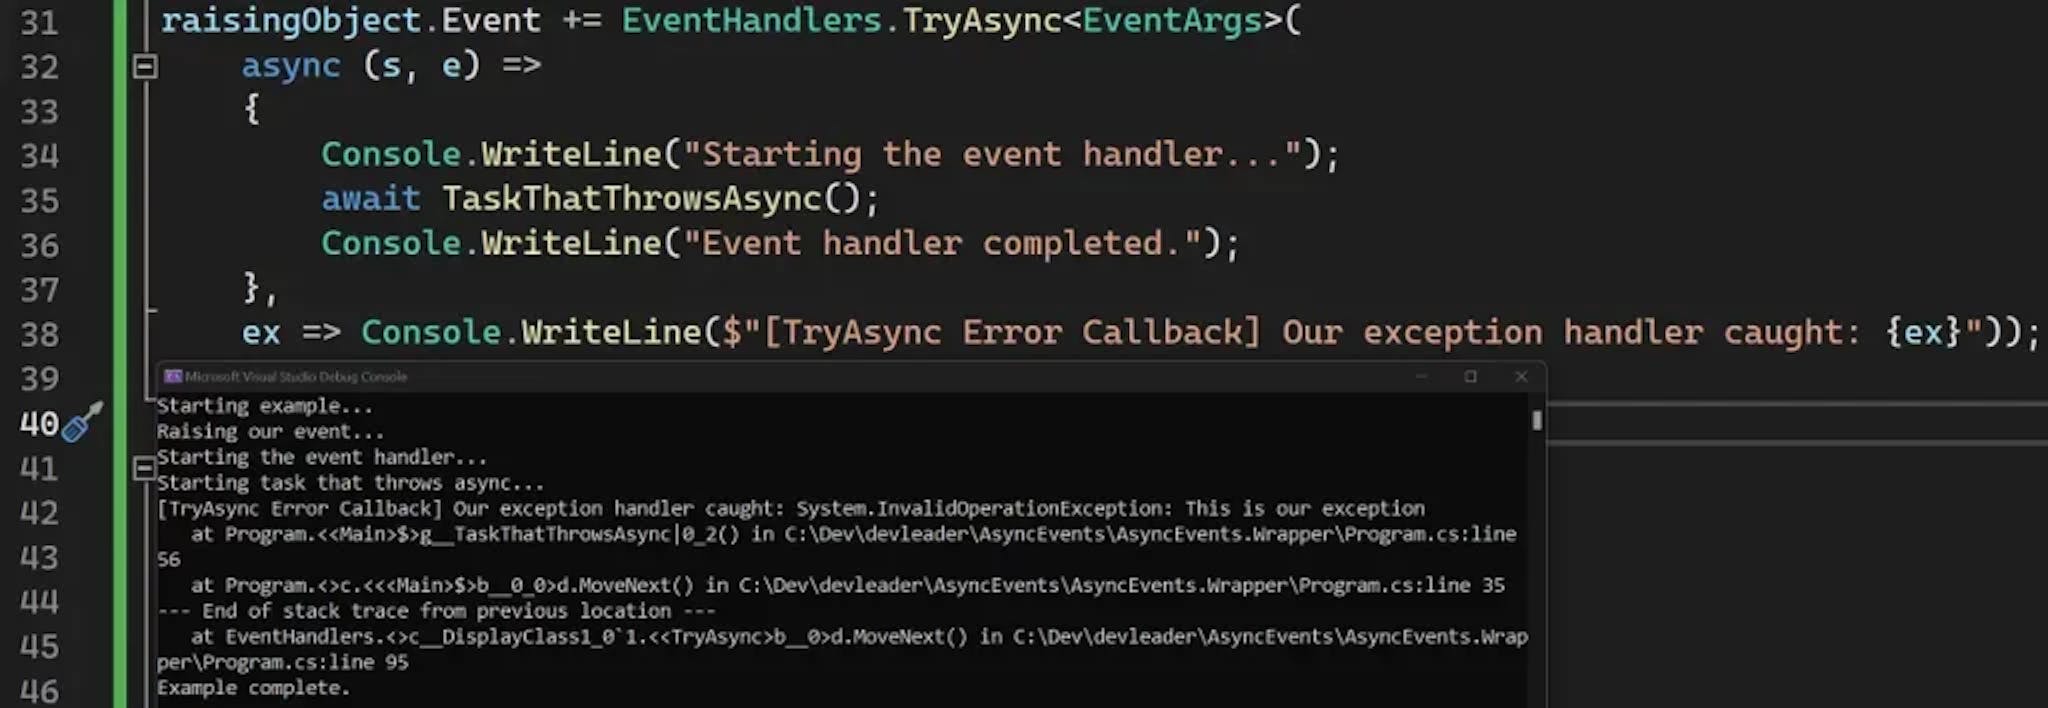 Ausgabe eines Beispielprogramms für asynchrone EventHandler